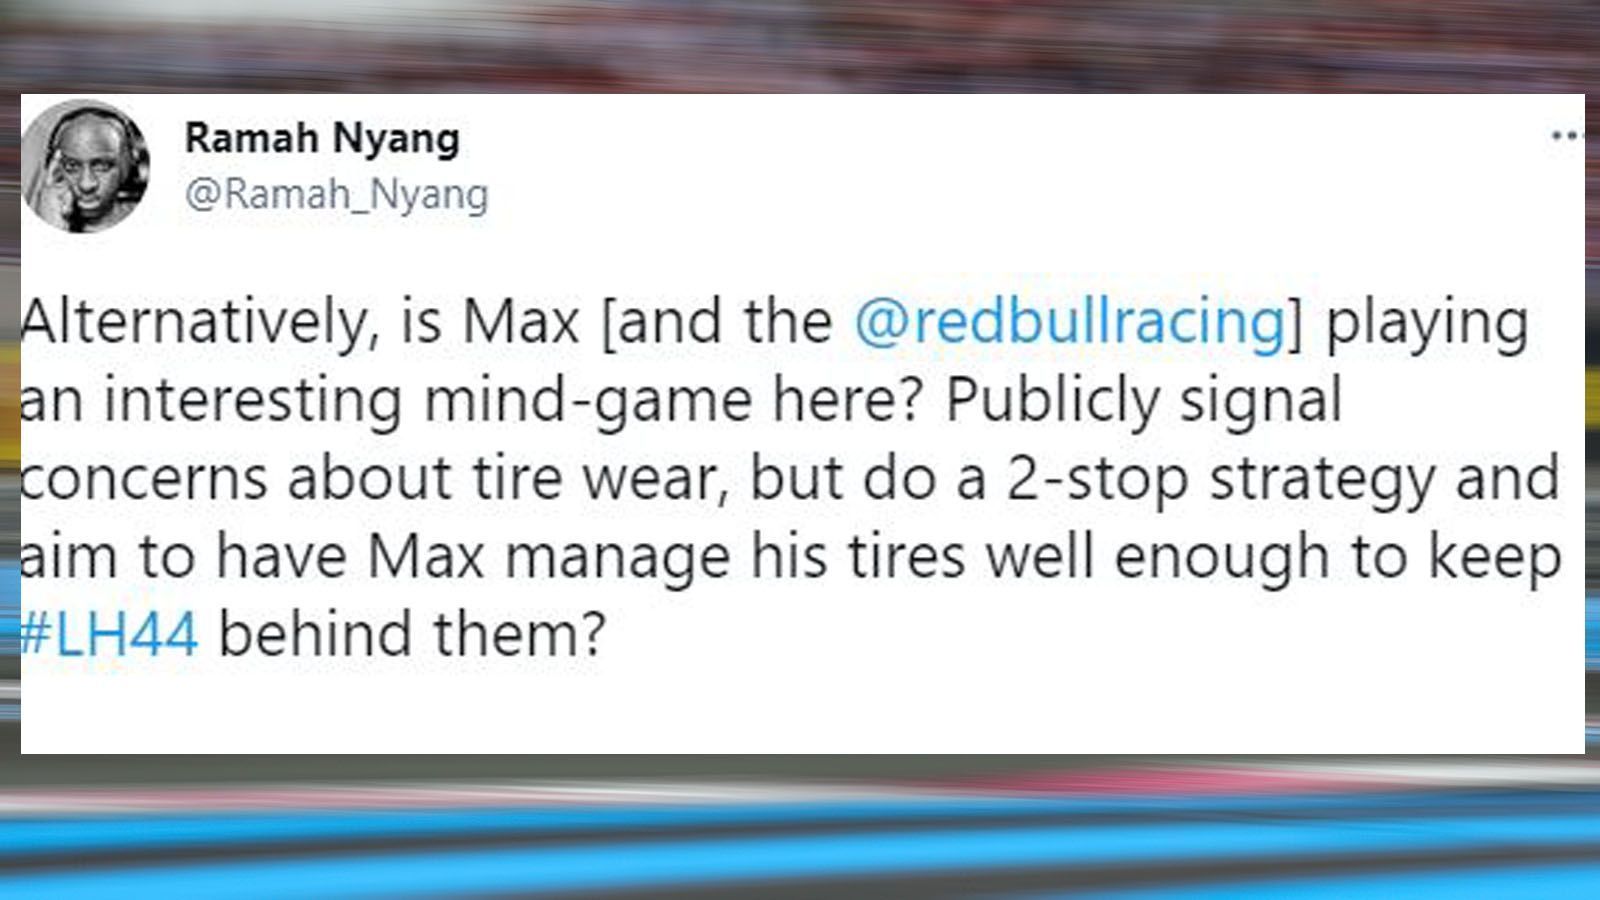 
                <strong>Mind Games von Red Bull?</strong><br>
                Im Gegensatz zu Mercedes, entscheidet sich Red Bull für eine Zwei-Stopp-Strategie und triumphiert damit. Zwischendurch wird auch über Mind Games spekuliert. 
              